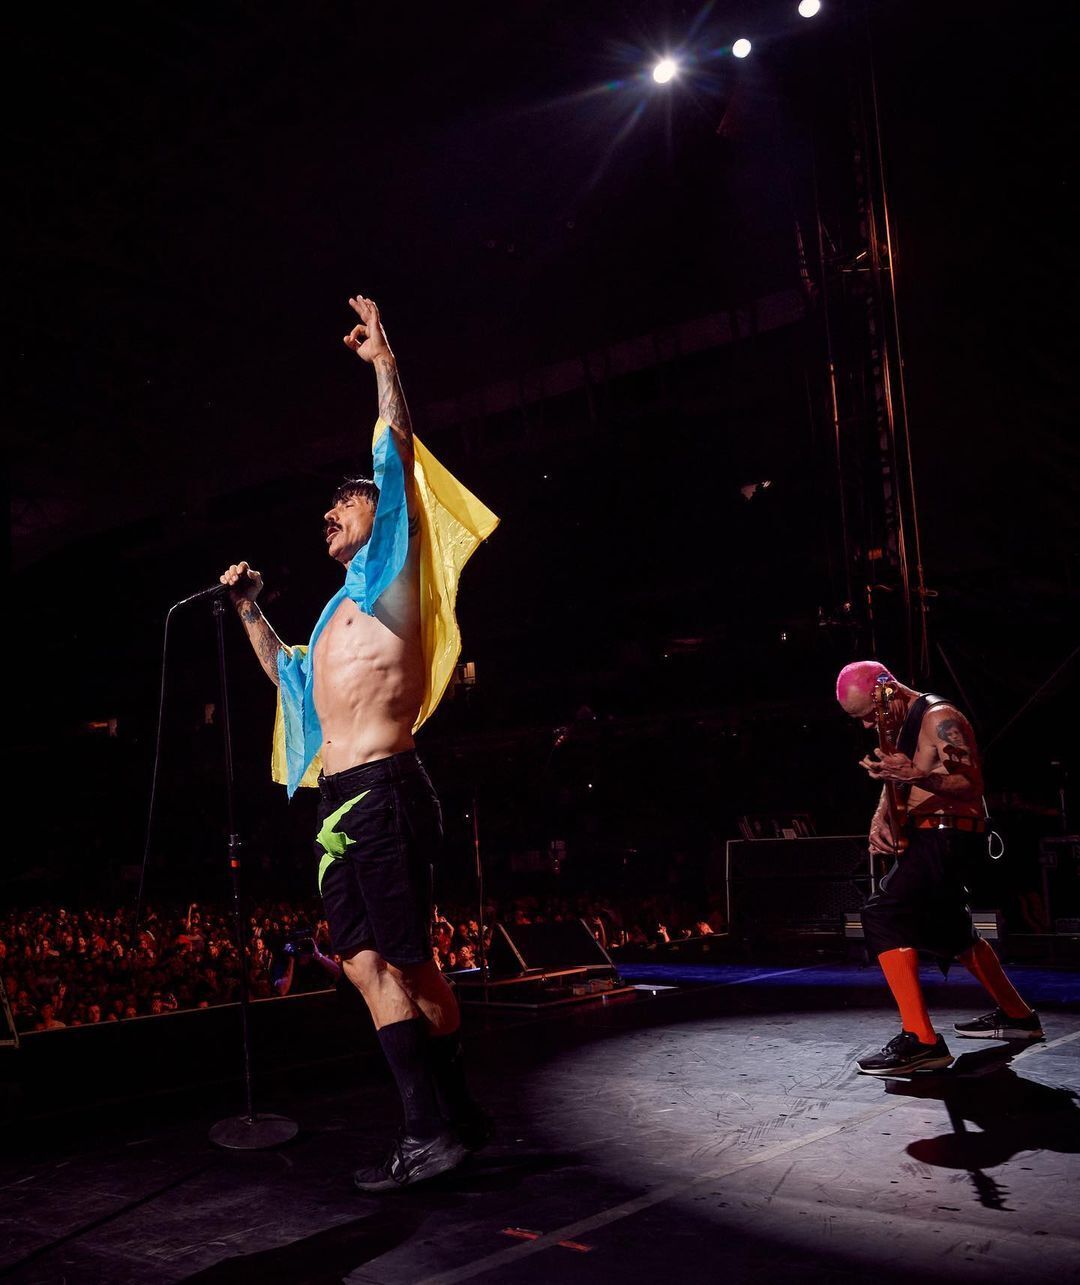 Paul McCartney, Rammstein i inni: światowe gwiazdy, które podniosły flagę Ukrainy na swoich koncertach. Zdjęcia i wideo